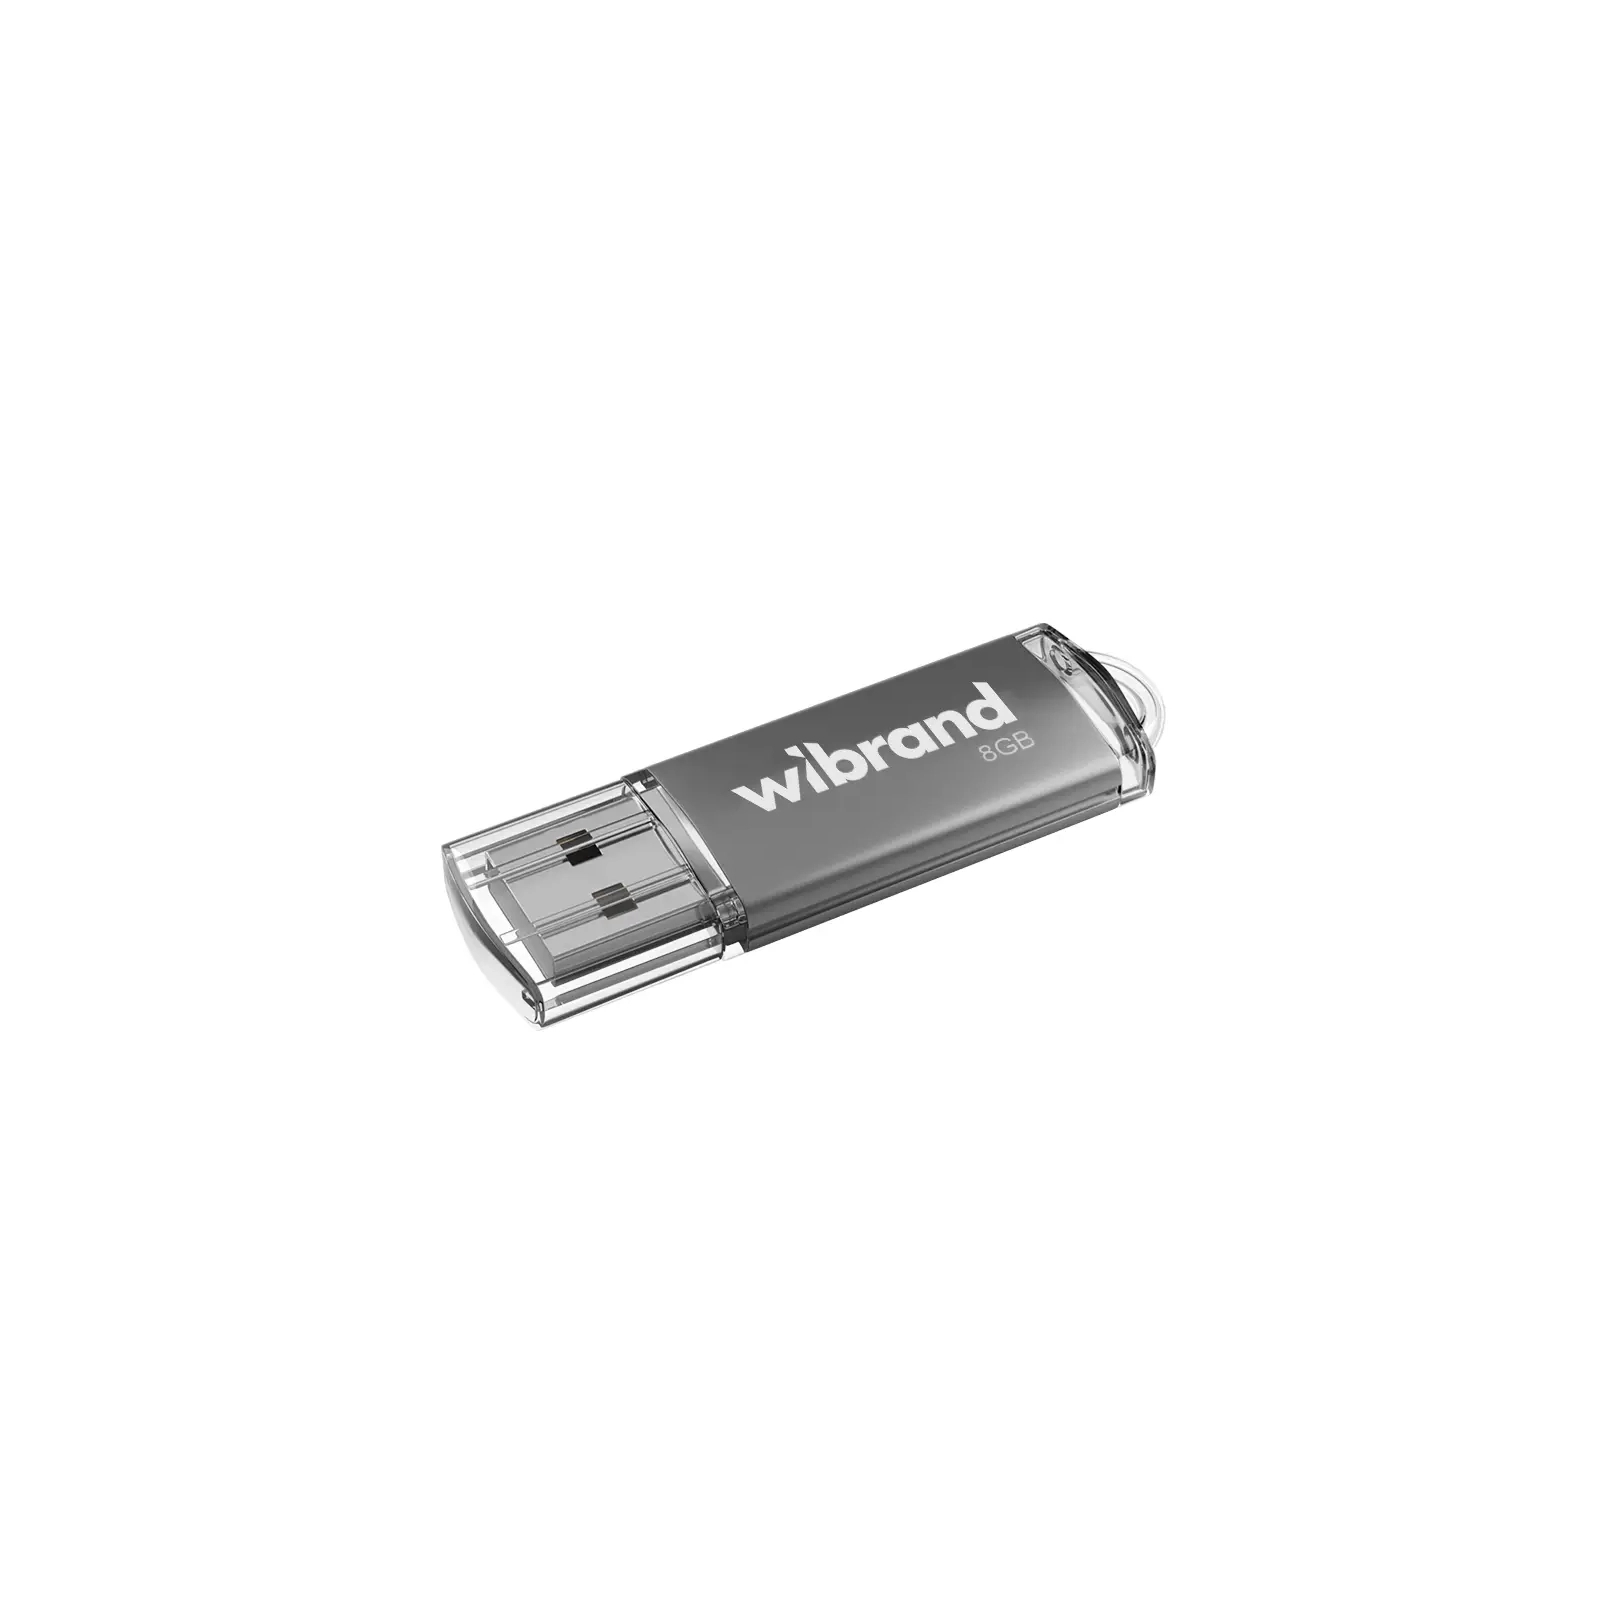 USB флеш накопитель Wibrand 8GB Cougar Black USB 2.0 (WI2.0/CU8P1B)